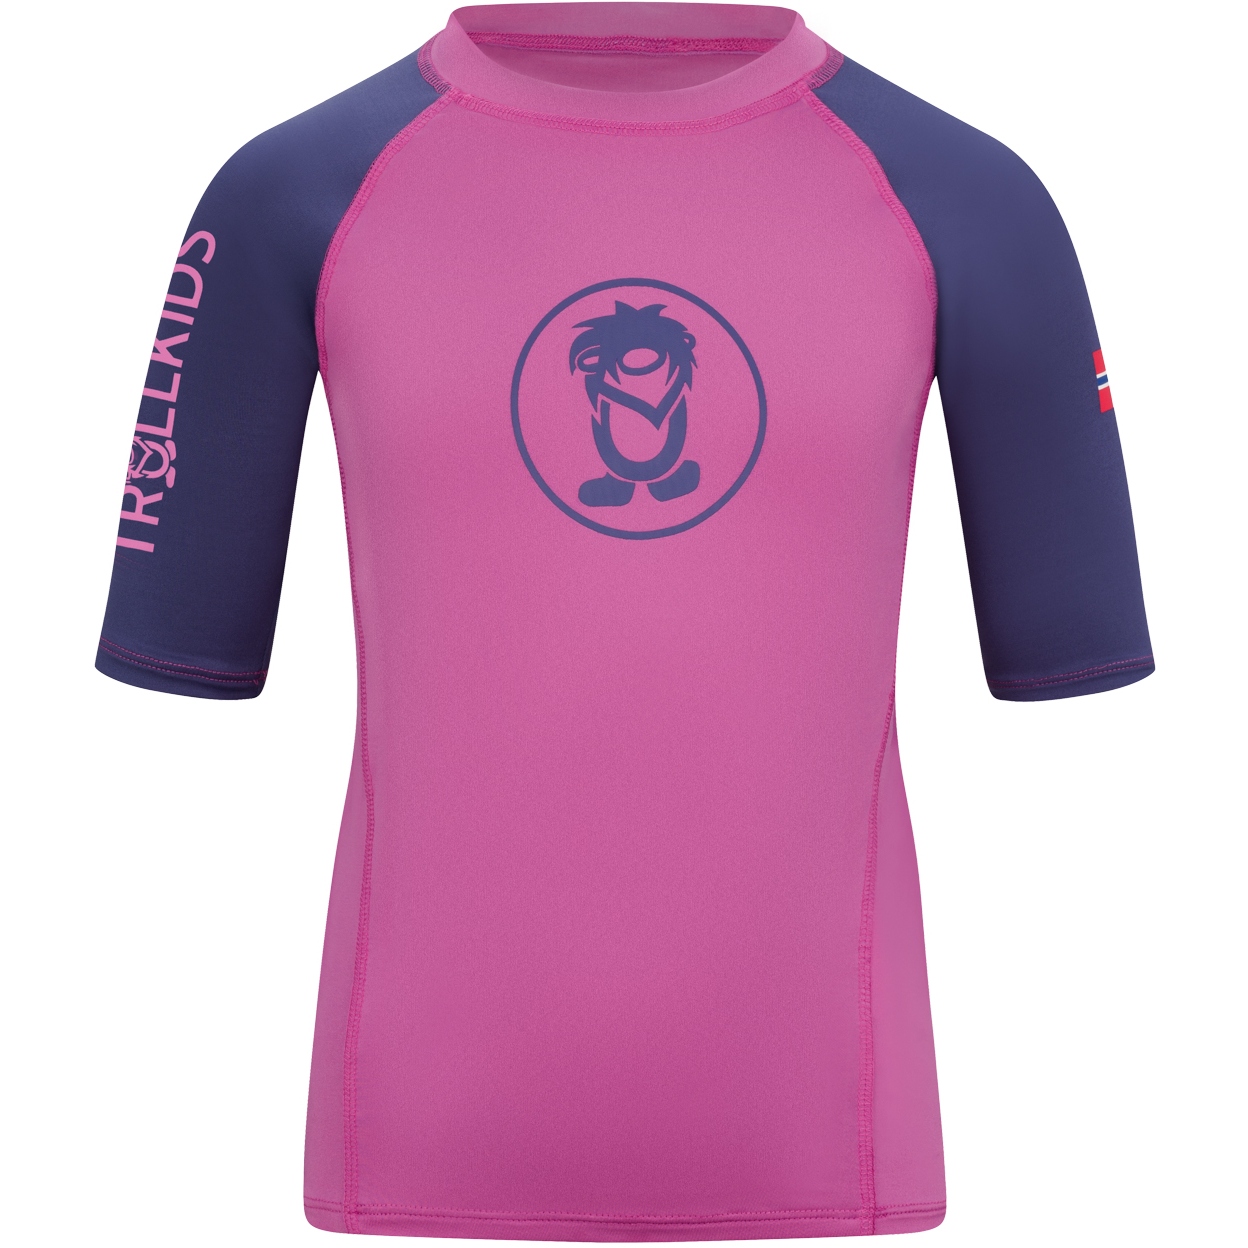 Produktbild von Trollkids Kvalvika Schwimm-T-Shirt Kinder - mallow pink/violet blue